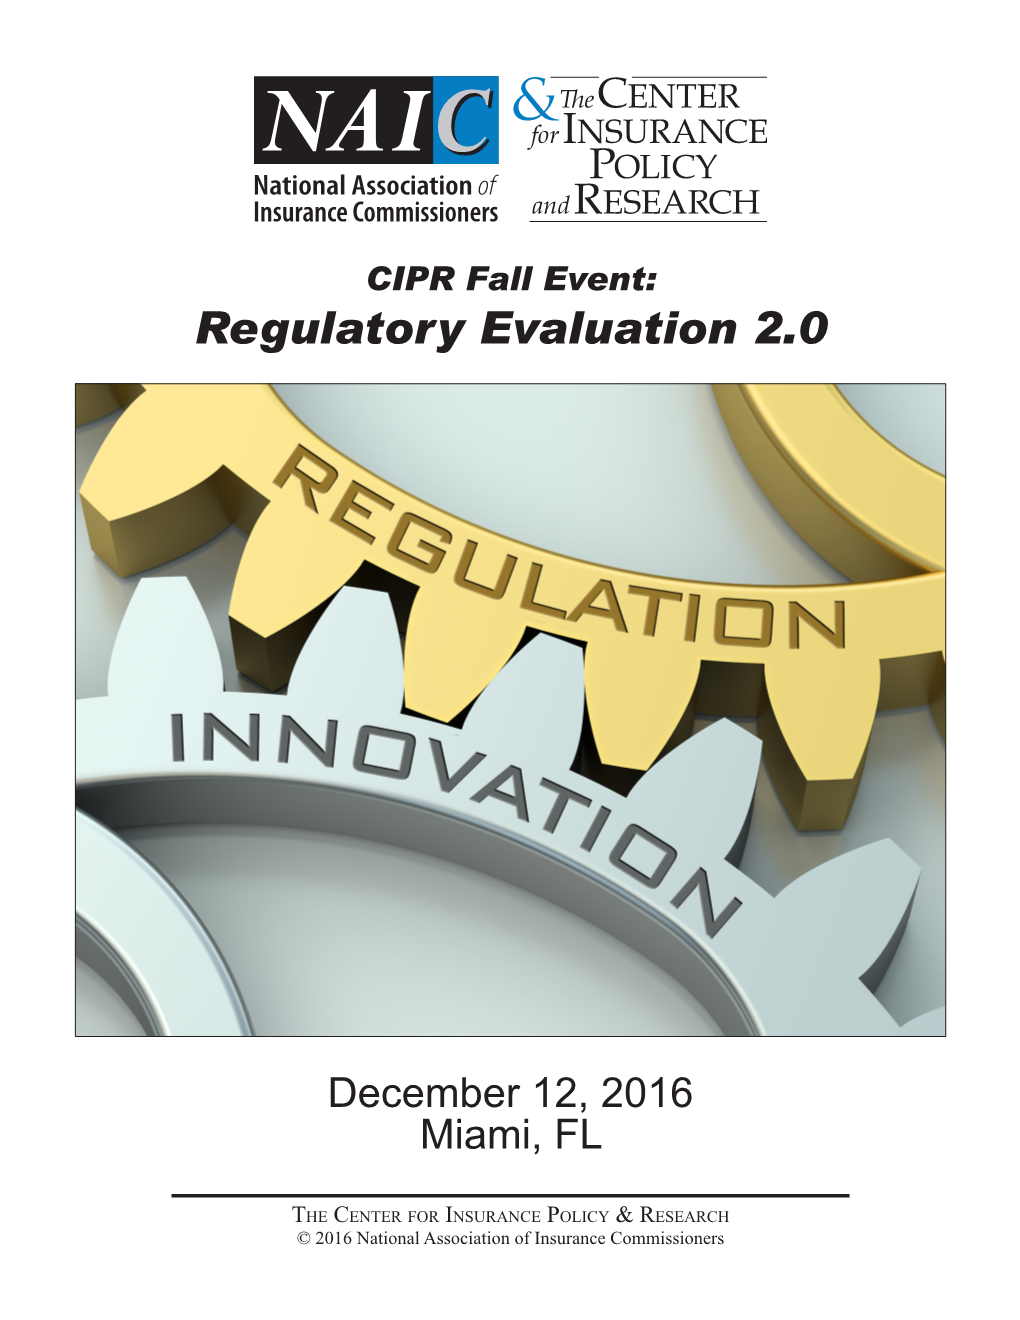 CIPR Fall Event: Regulatory Evaluation 2.0